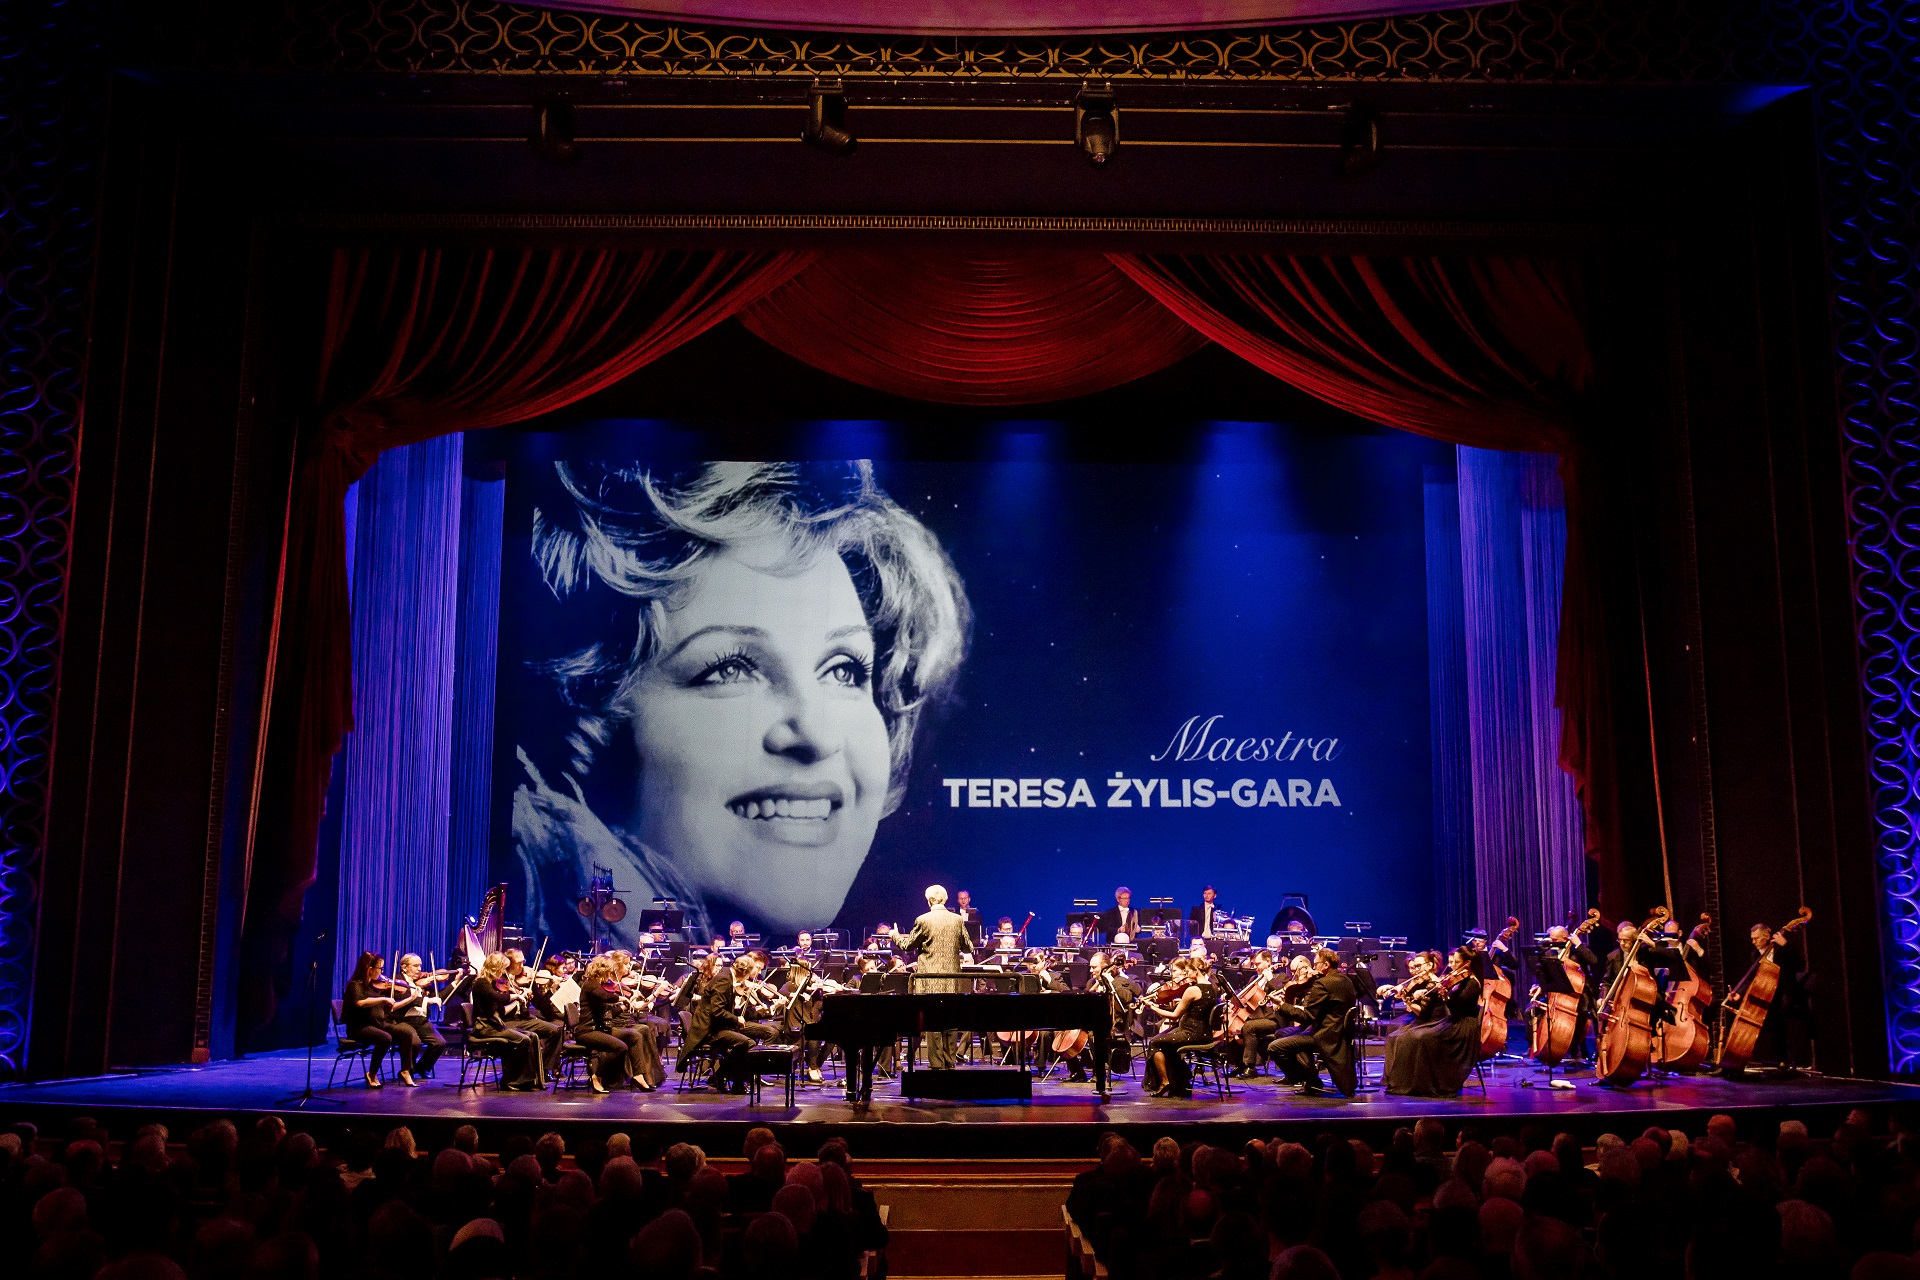 Teresa Żylis-Gara birthday gala, Polish National Opera, Teatr Wielki, 26 January 2020 by Krzysztof Bieliński